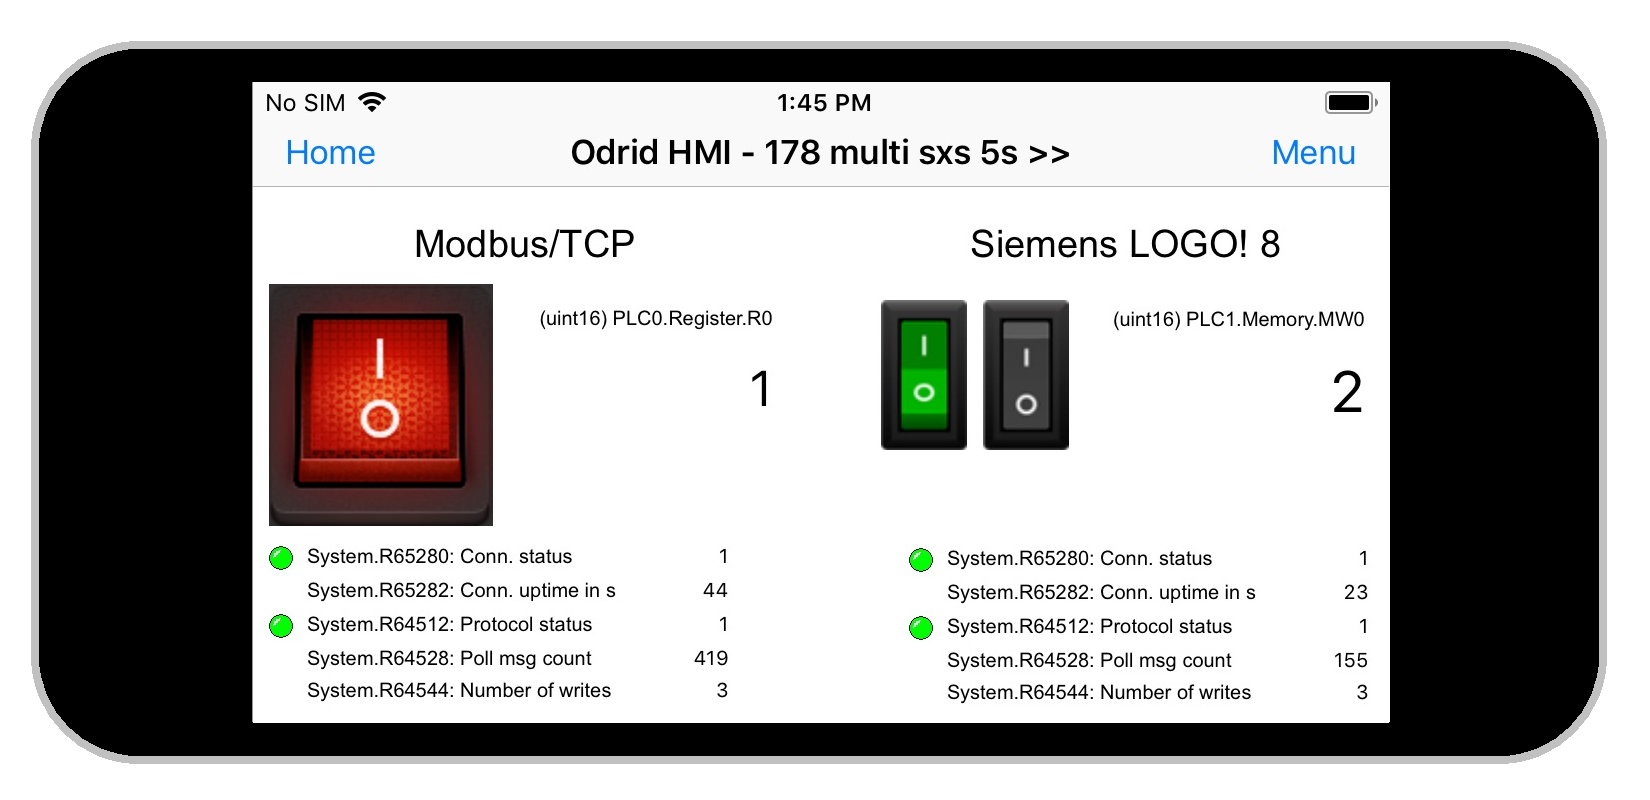 Odrid HMI 1.3.0 on an Iphone 5s